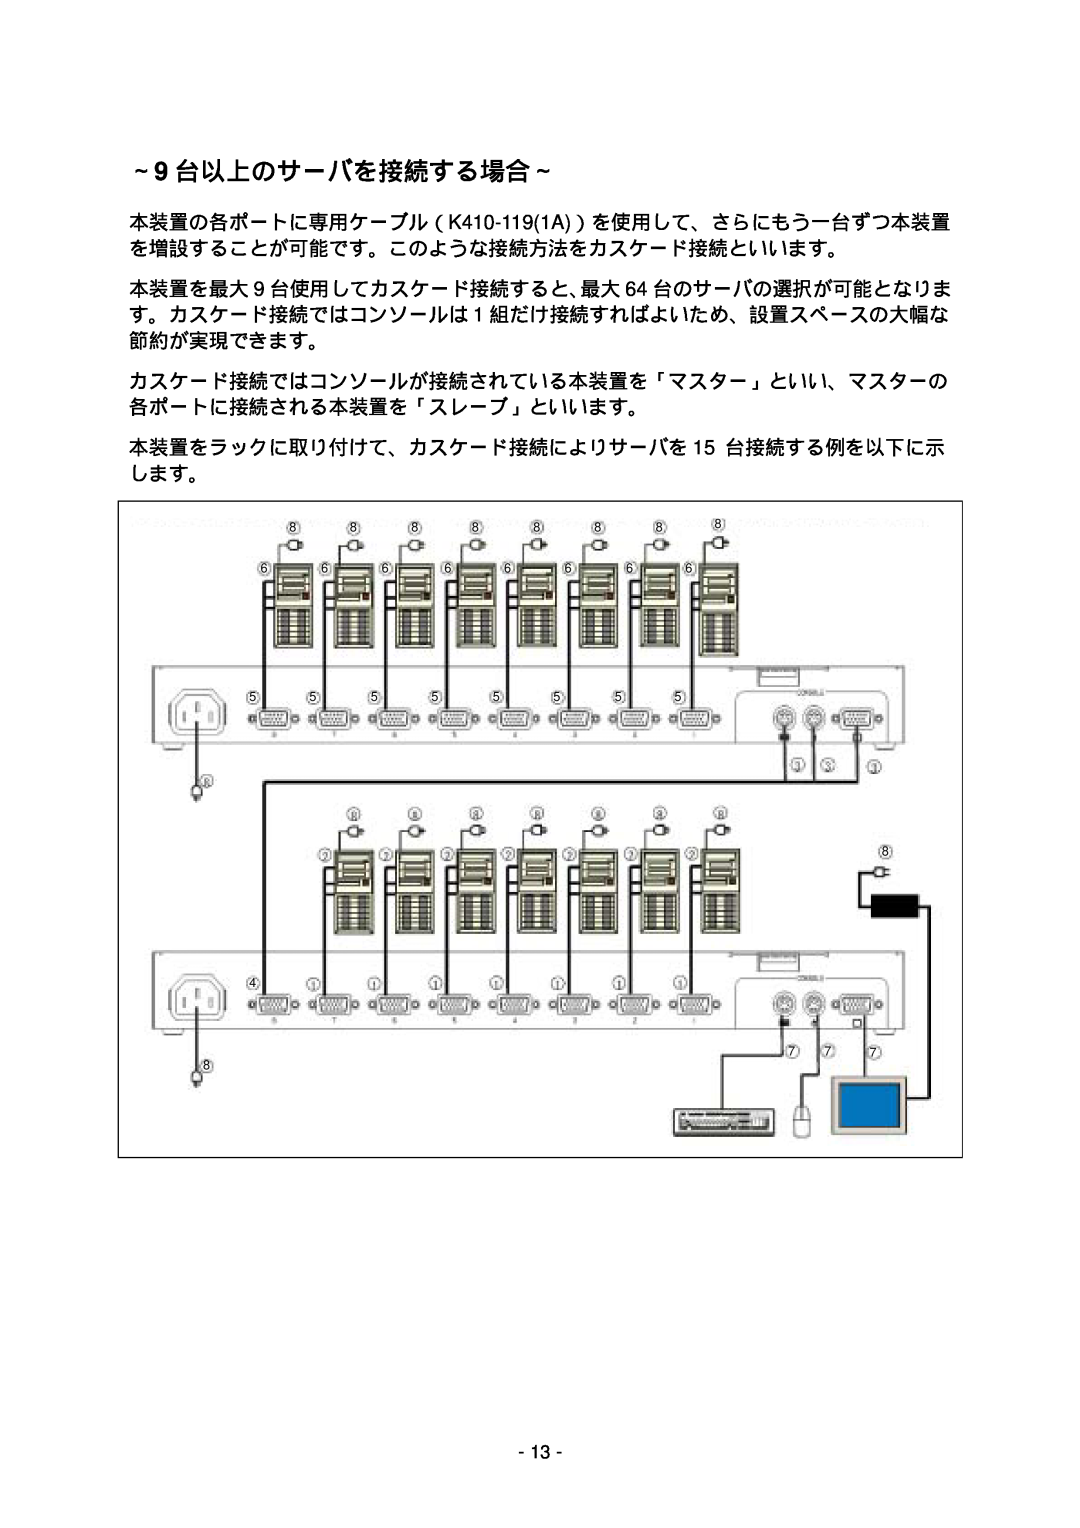 NEC N8191-09 manual ～9 台以上のサーバを接続する場合～, 本装置をラックに取り付けて、カスケード接続によりサーバを 15 台接続する例を以下に示 します。 